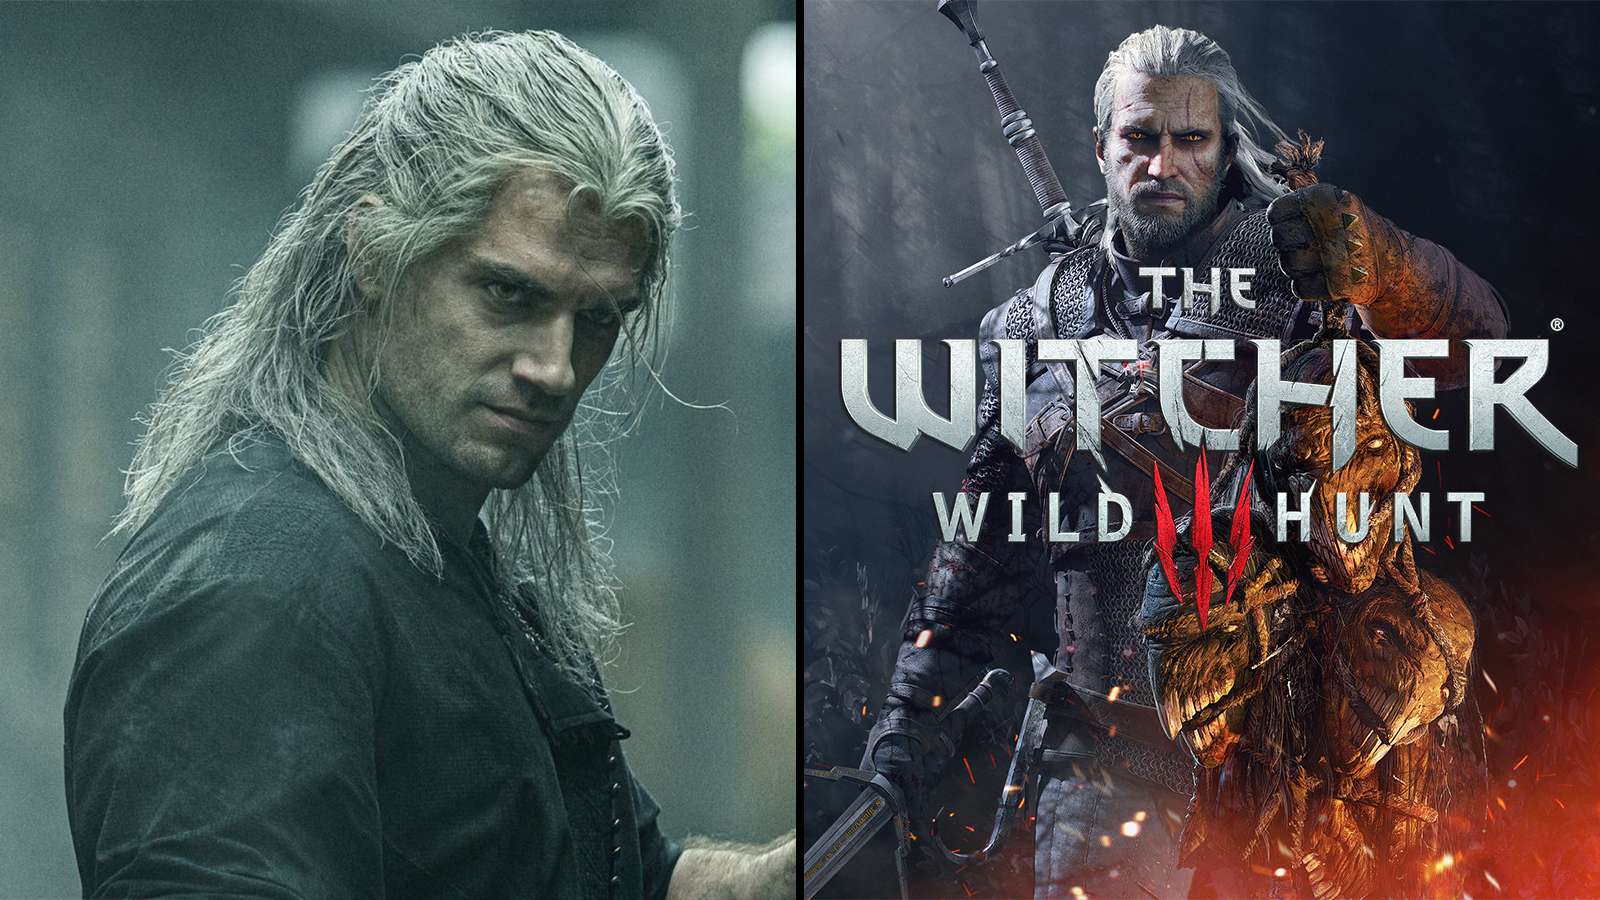 Witcher 3 Geralt Netflix Best seller Henry Cavill